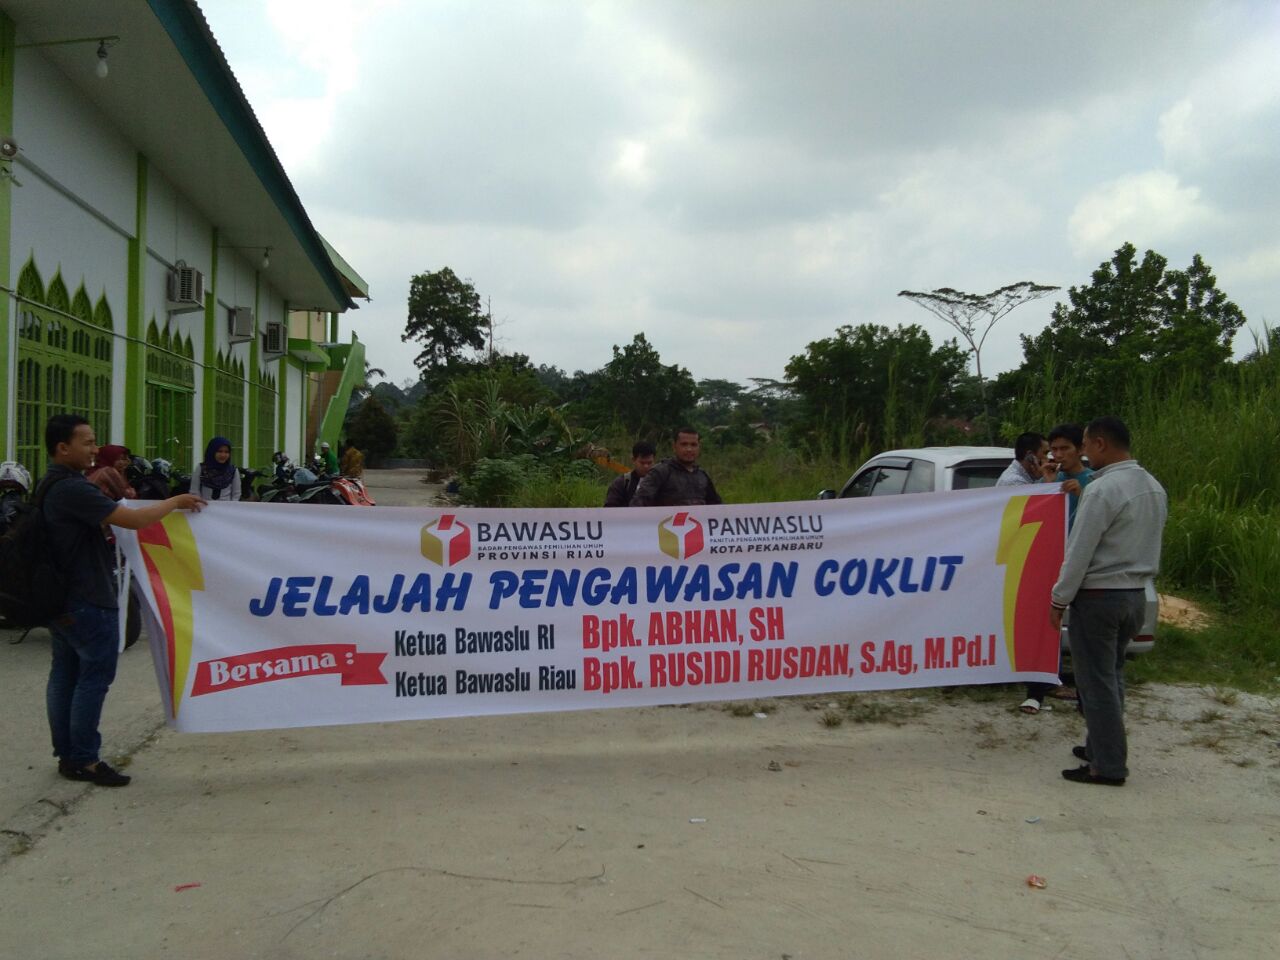 Ketua Bawaslu RI dan Bawaslu Riau Jelajah Coklit di Pekanbaru 